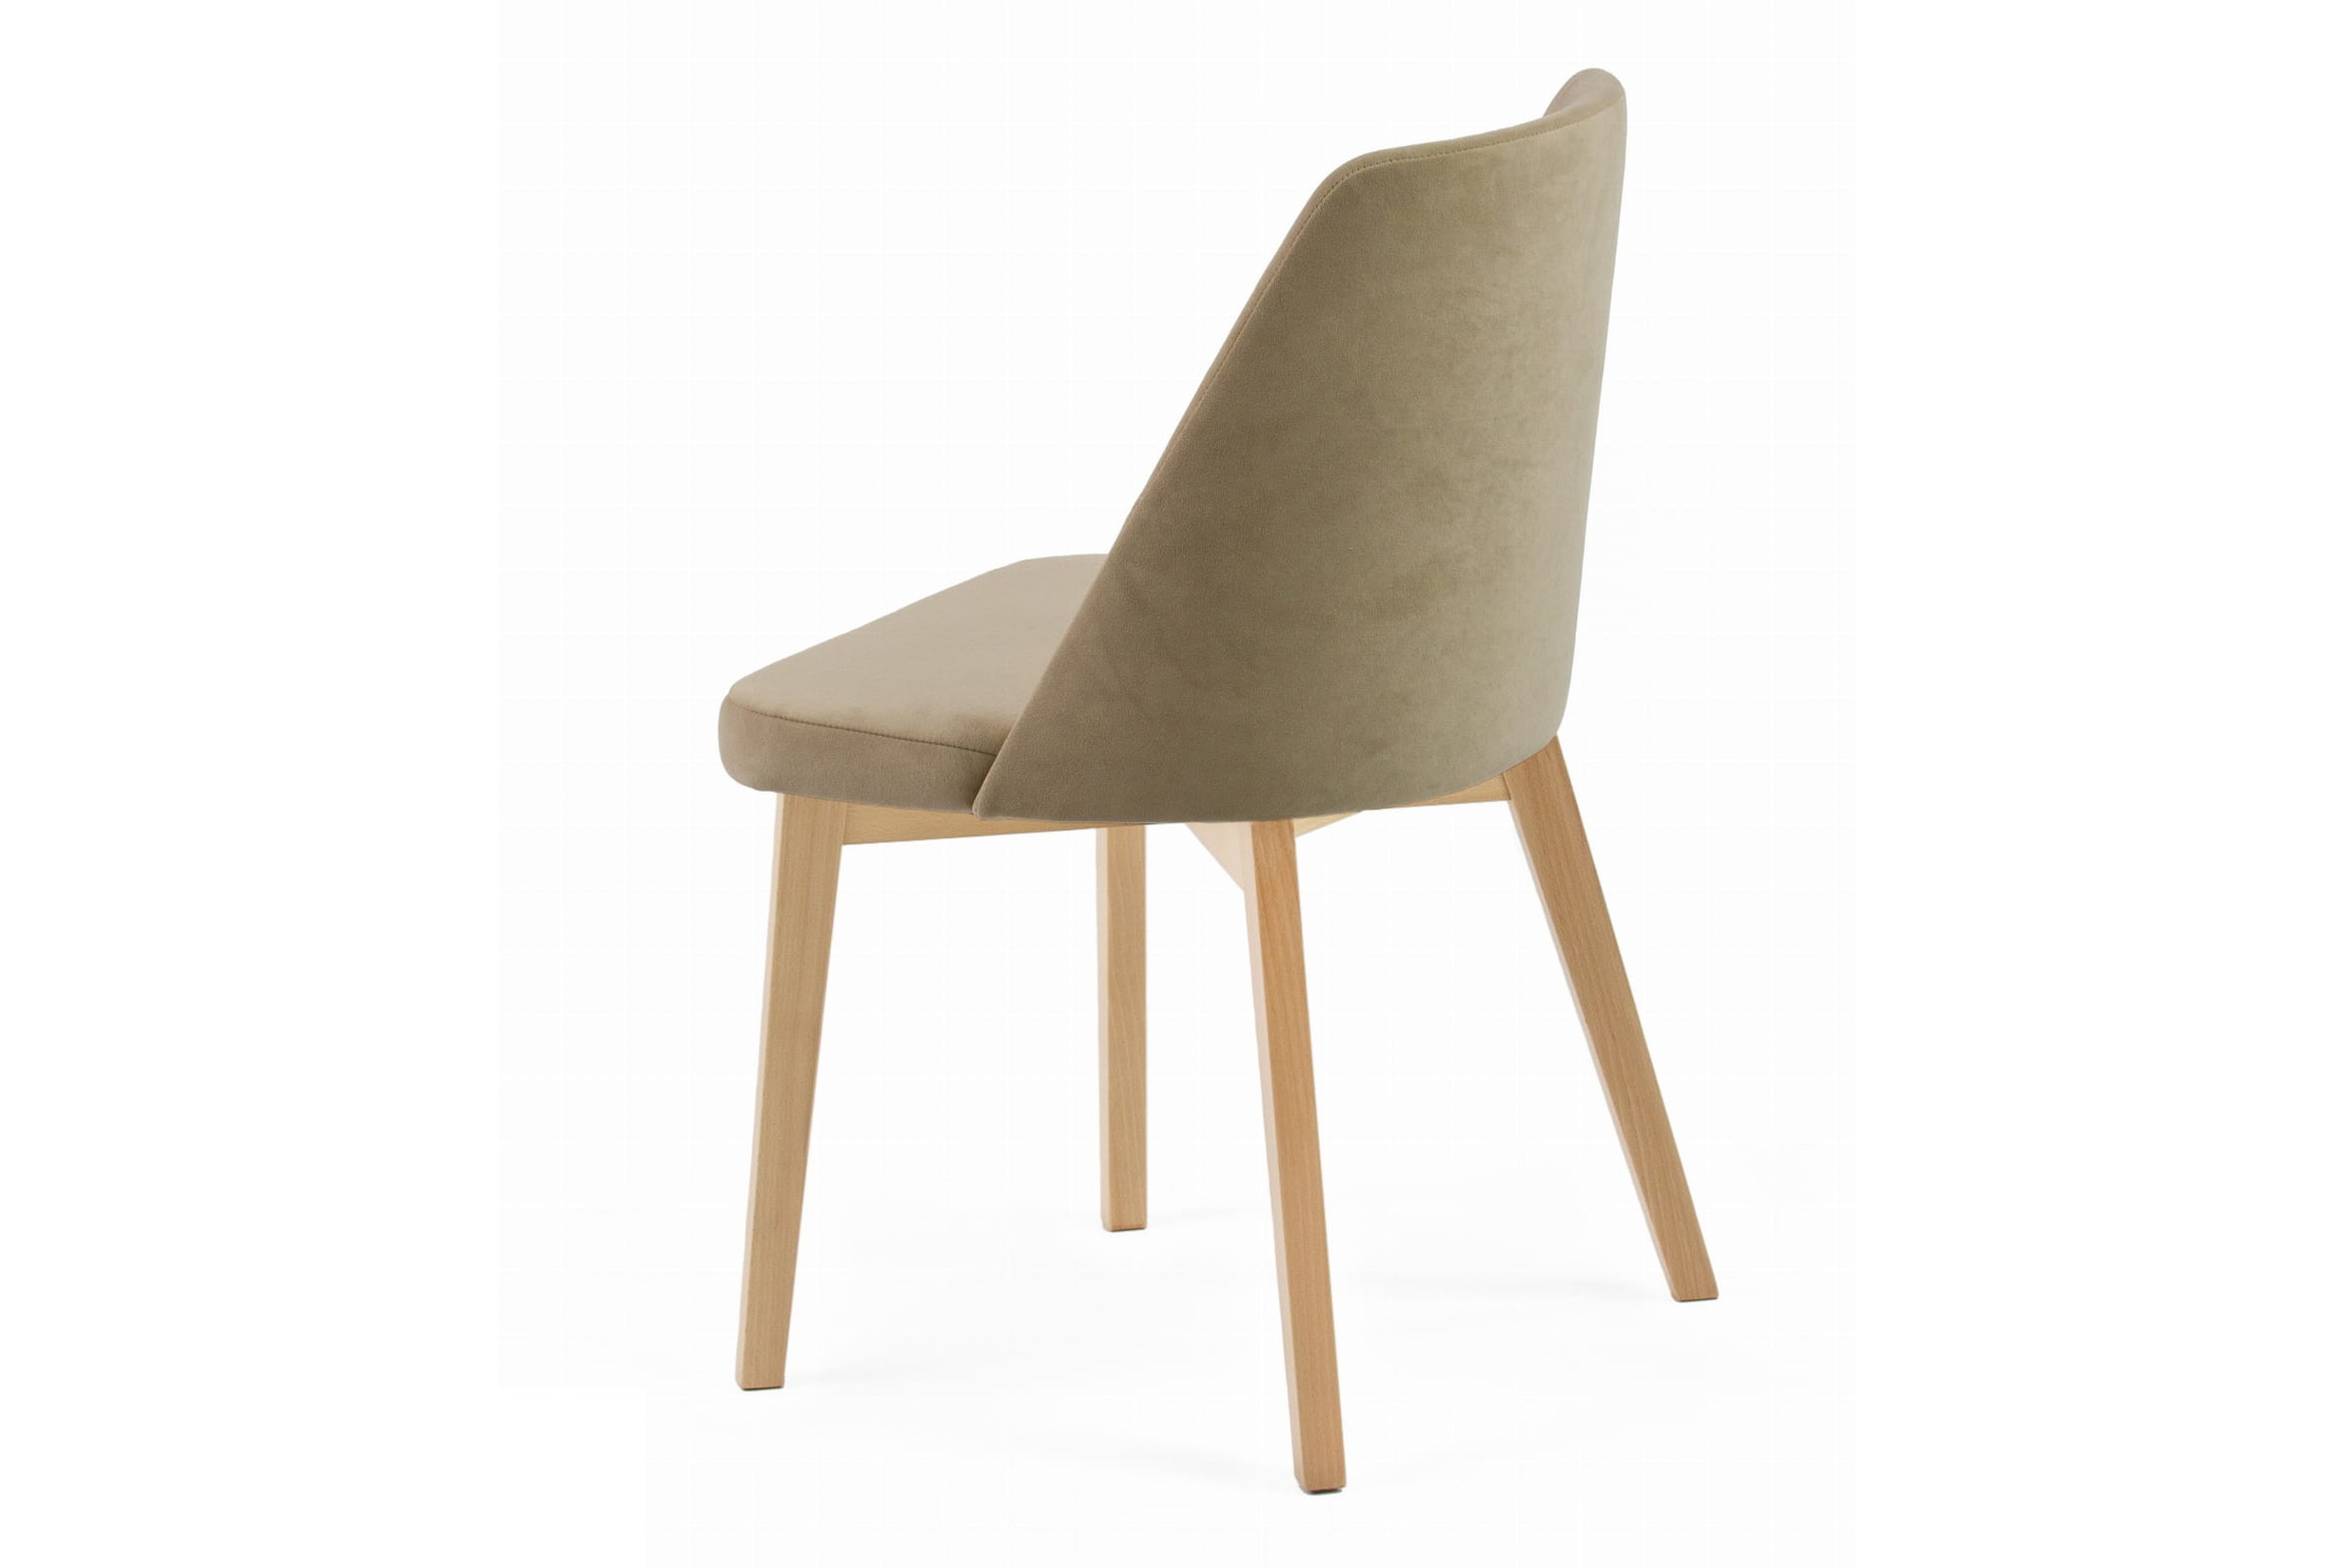 Krzesło tapicerowane Tagero na drewnianych nogach - Dream 01 / beż / nogi buk Krzesło tapicerowane Tagero na drewnianych nogach - Dream 01 / beż / nogi buk